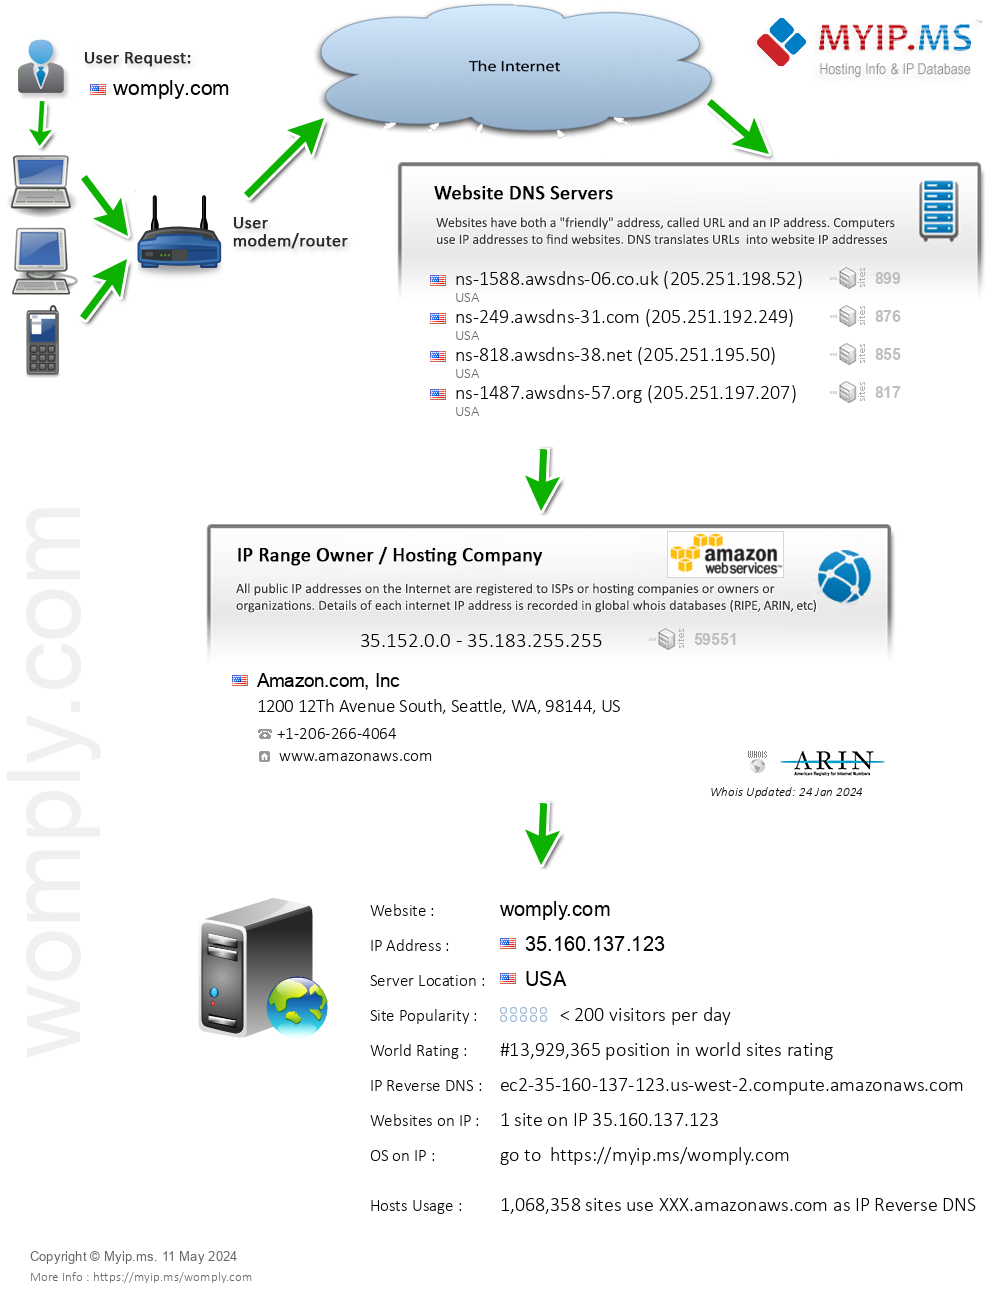 Womply.com - Website Hosting Visual IP Diagram